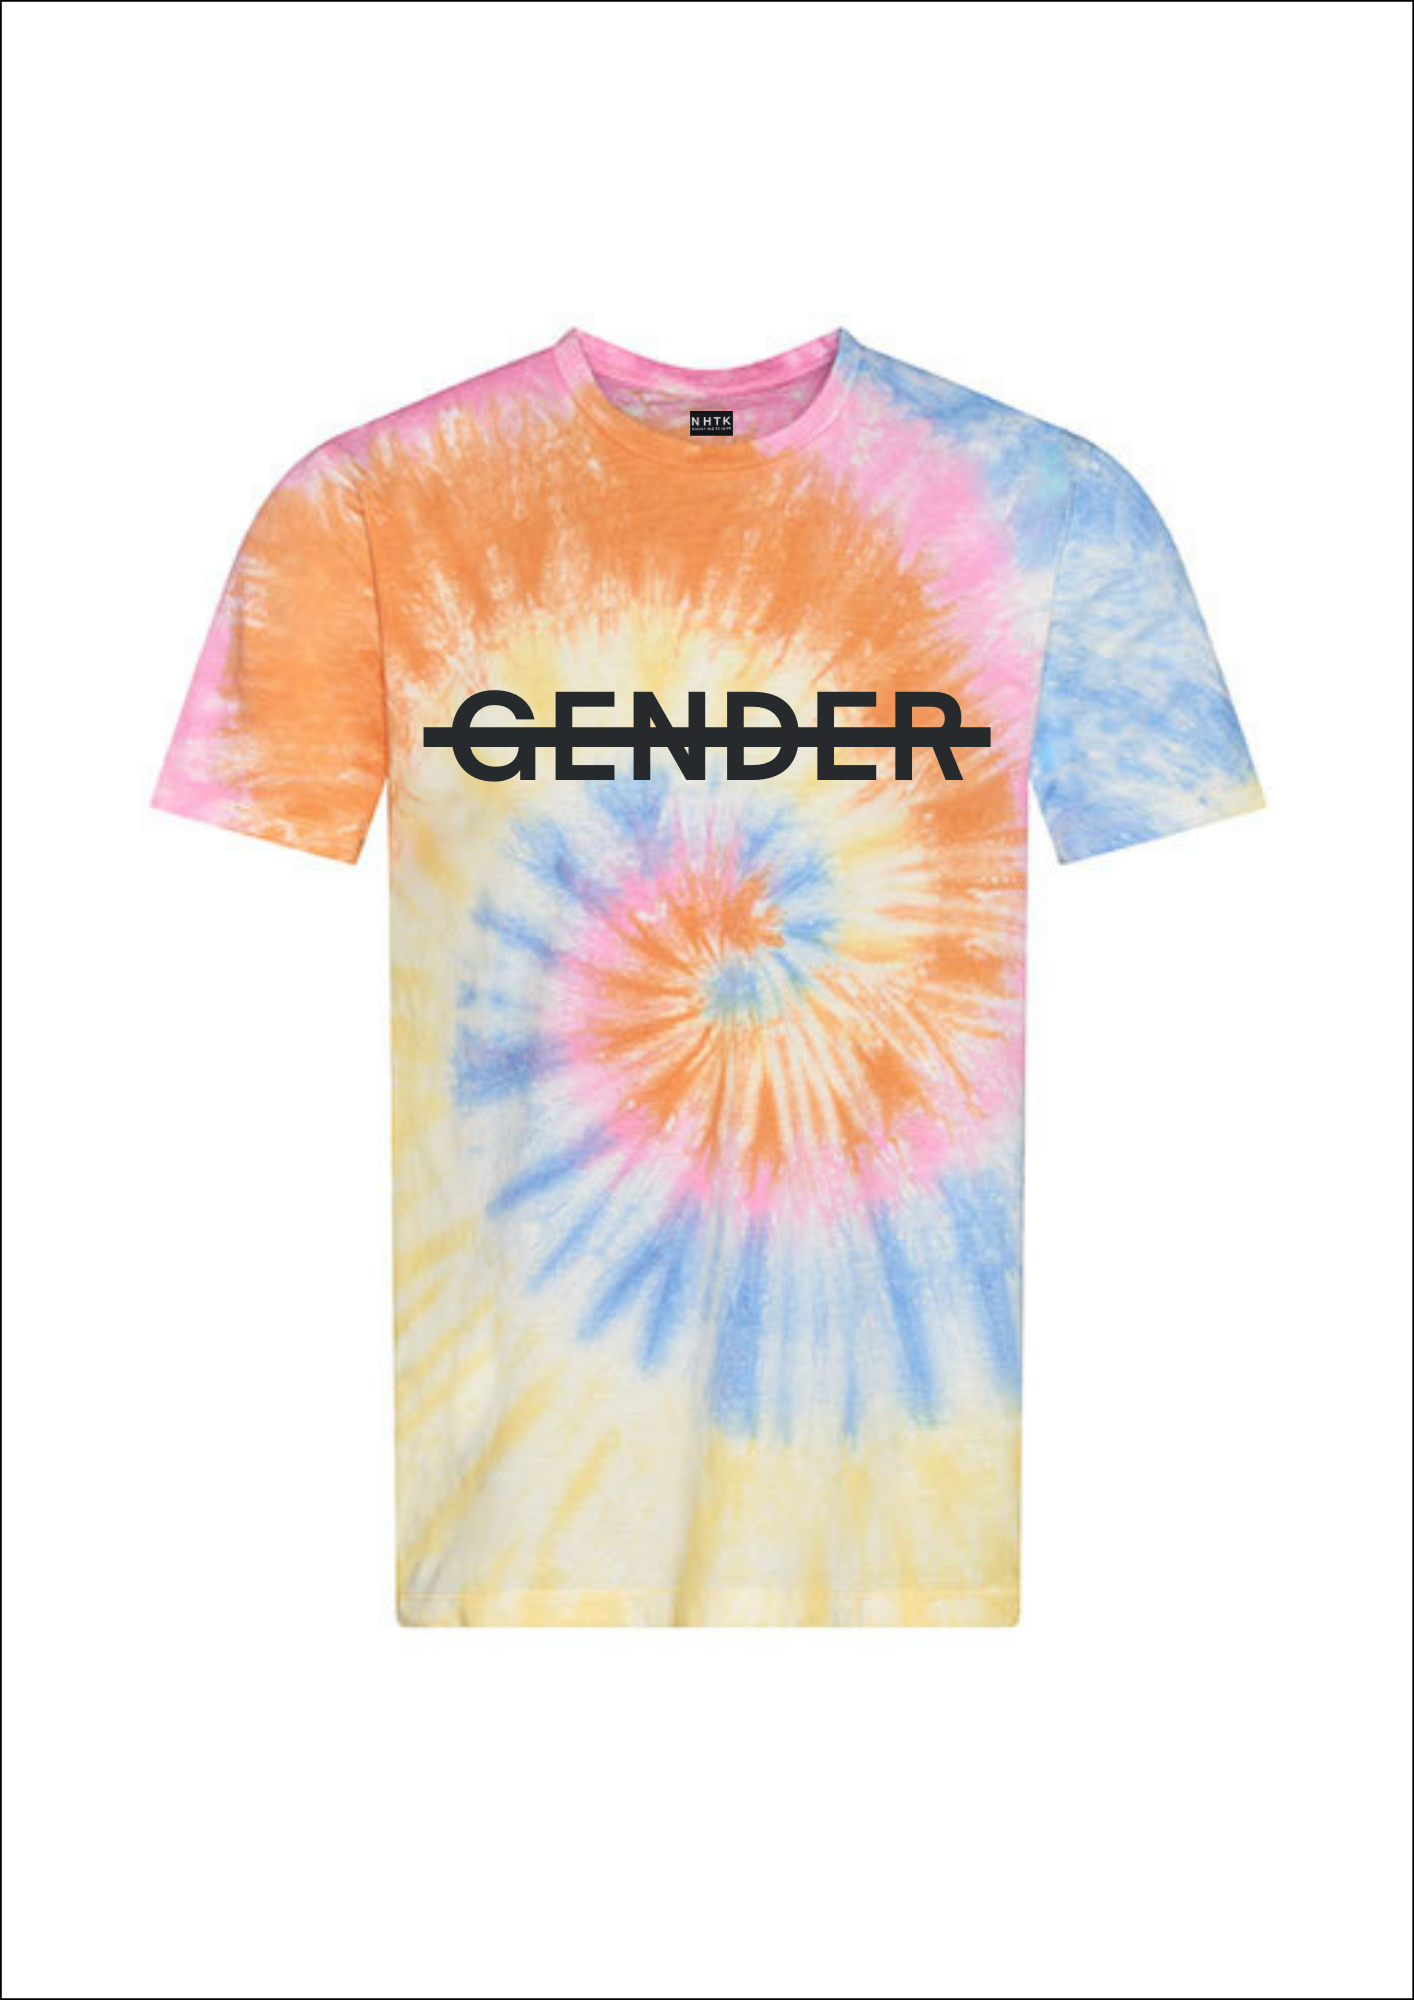 No gender t-shirt - tie dye